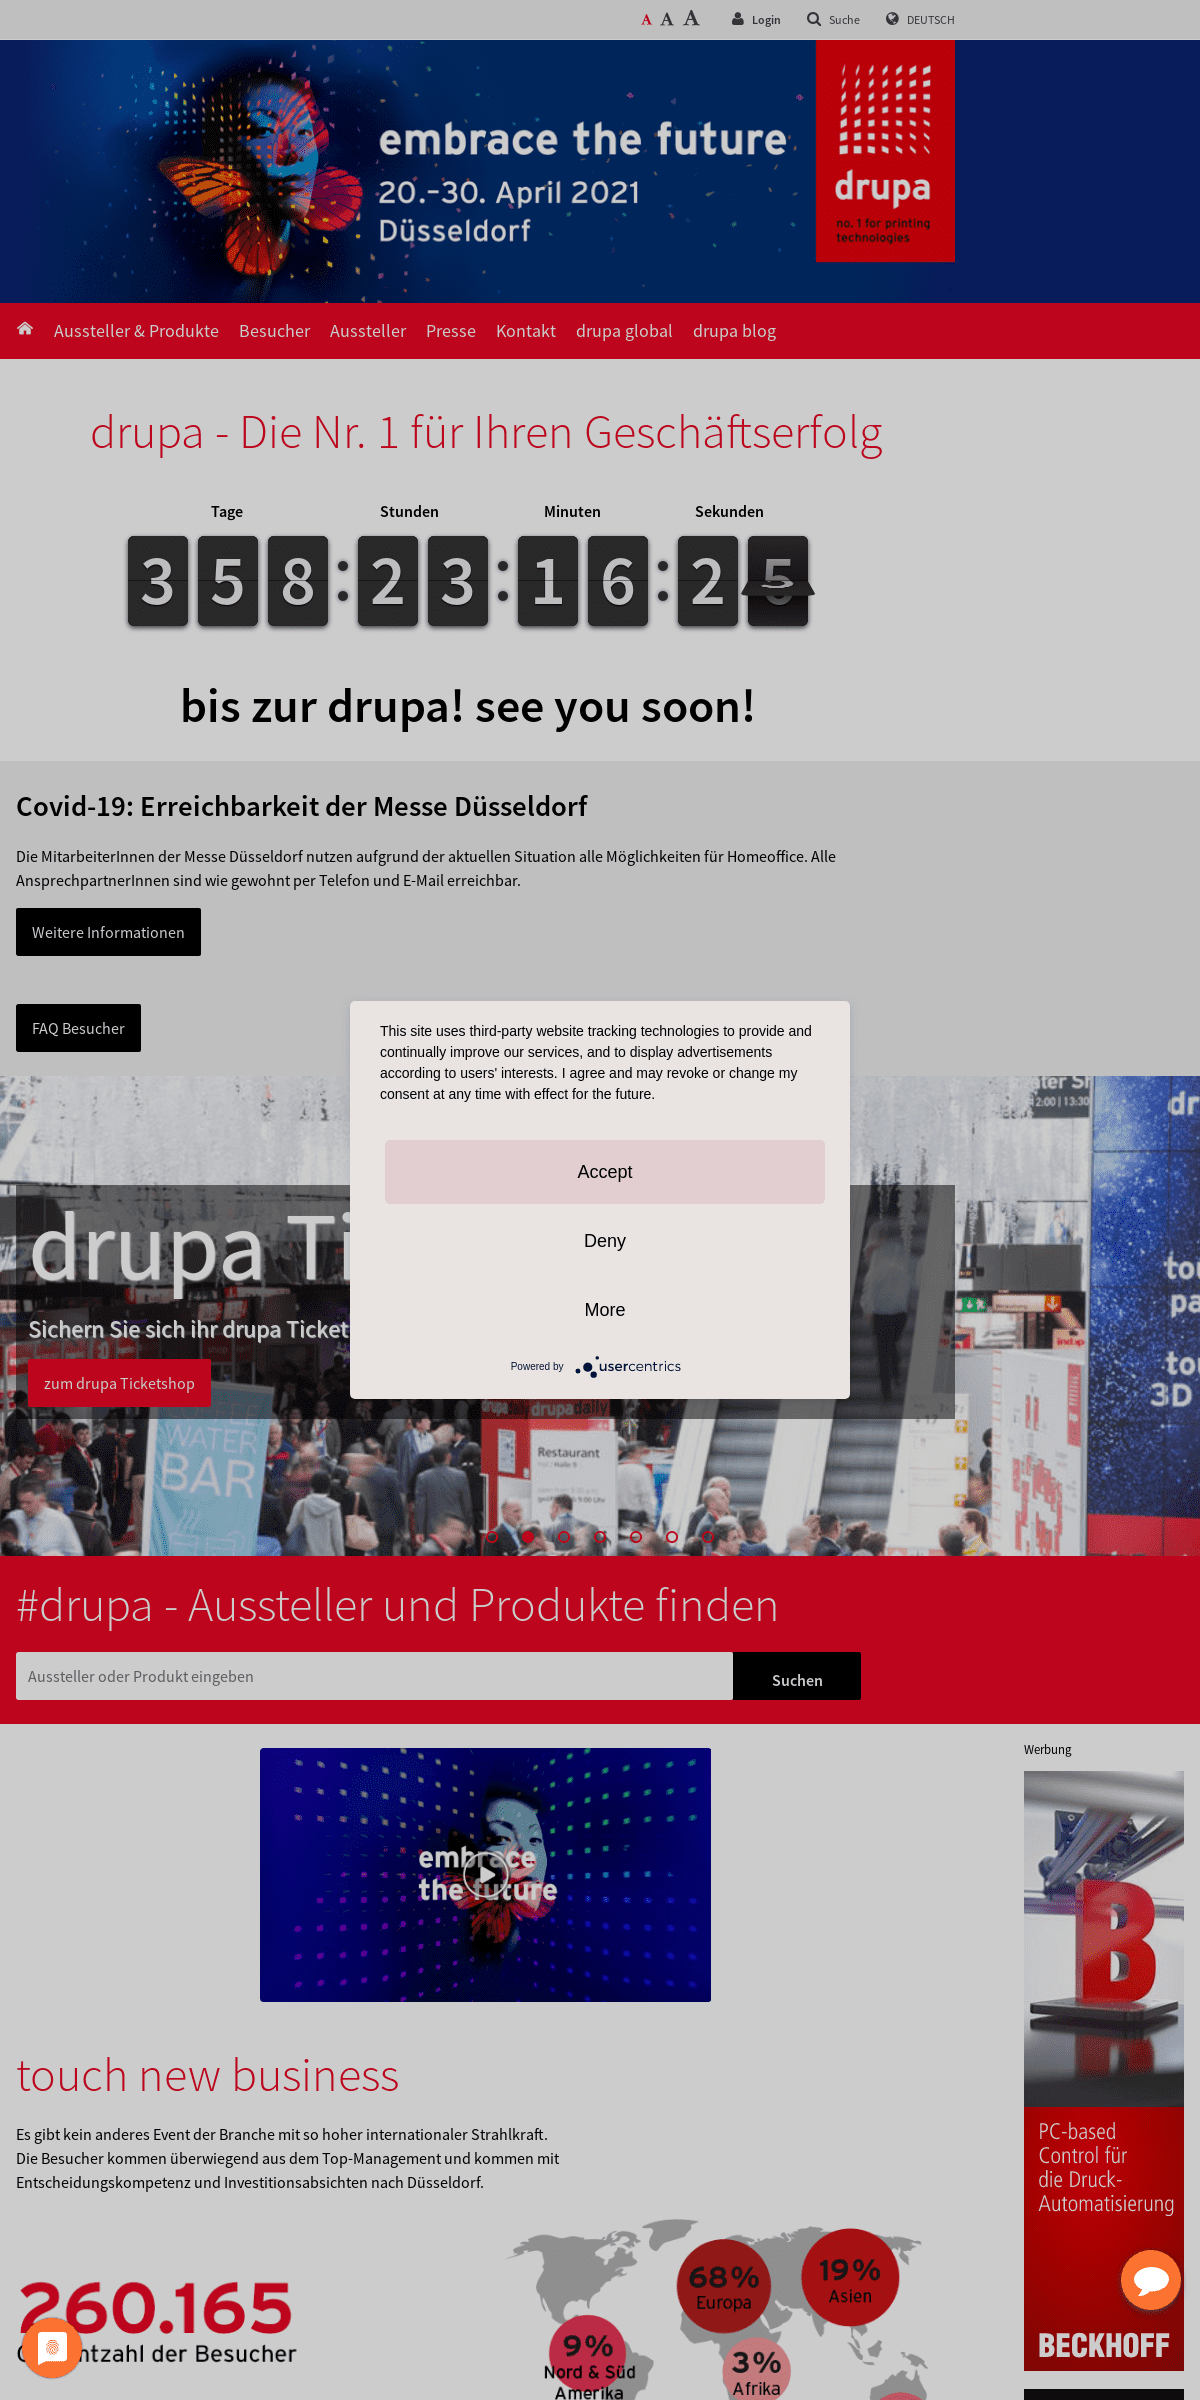 A complete backup of drupa.de